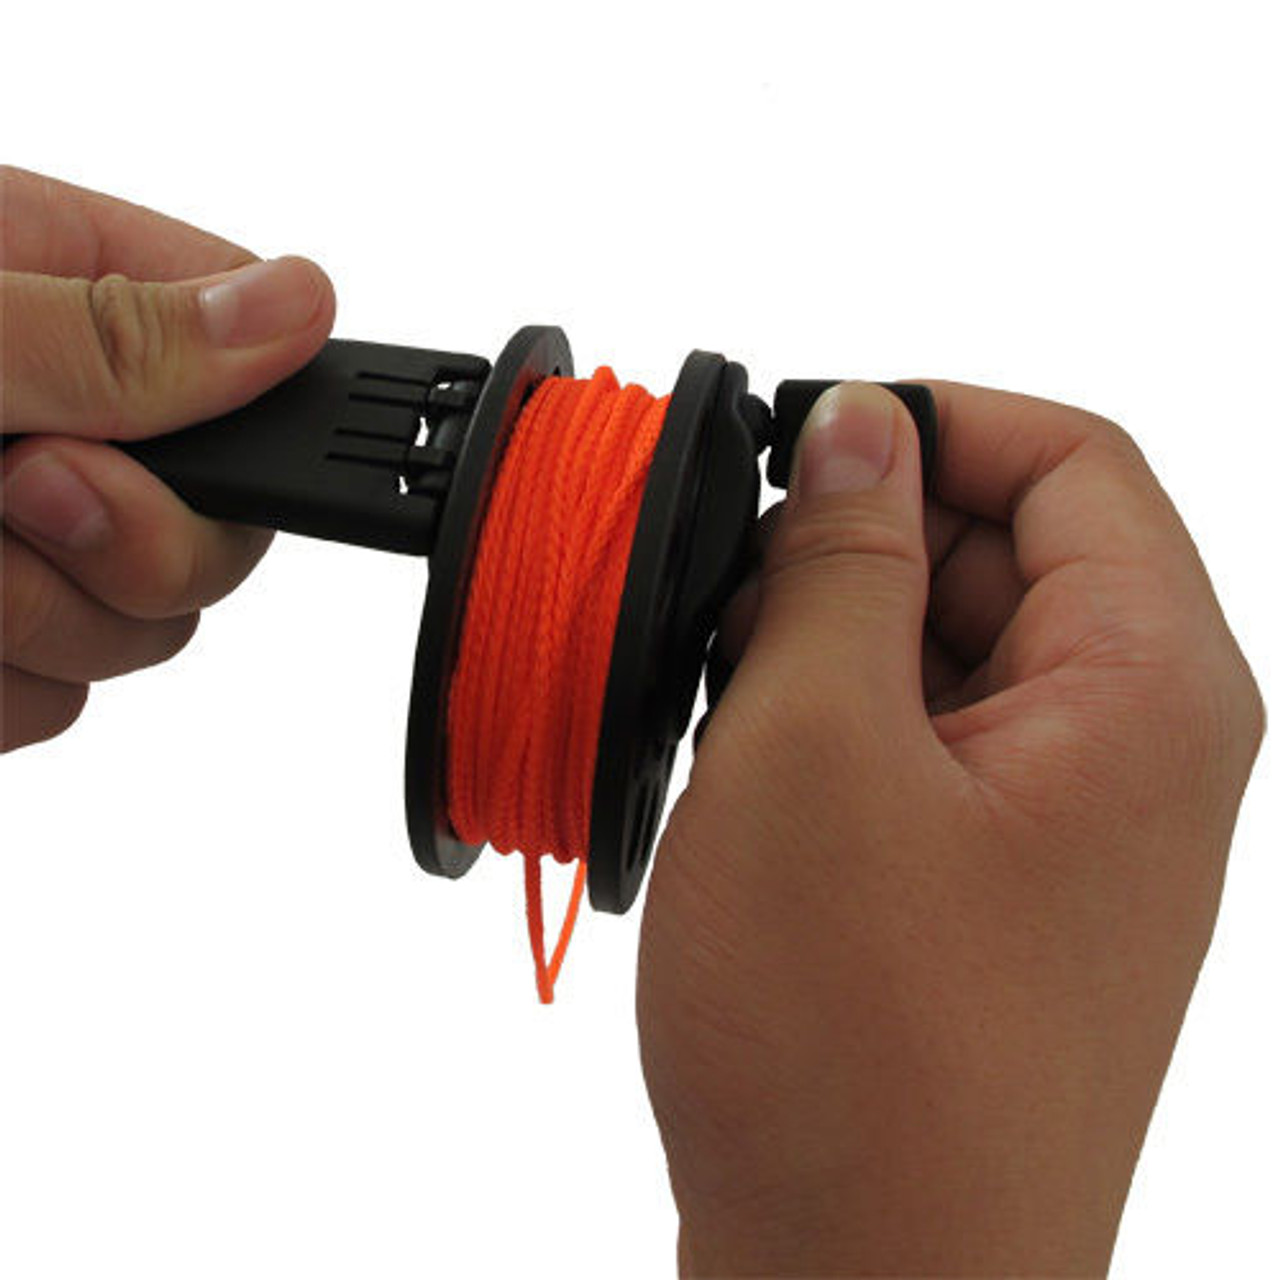 Scuba Diving Compact Finger Spool with Plastic Handle 65ft - Orange Line -  scubachoice